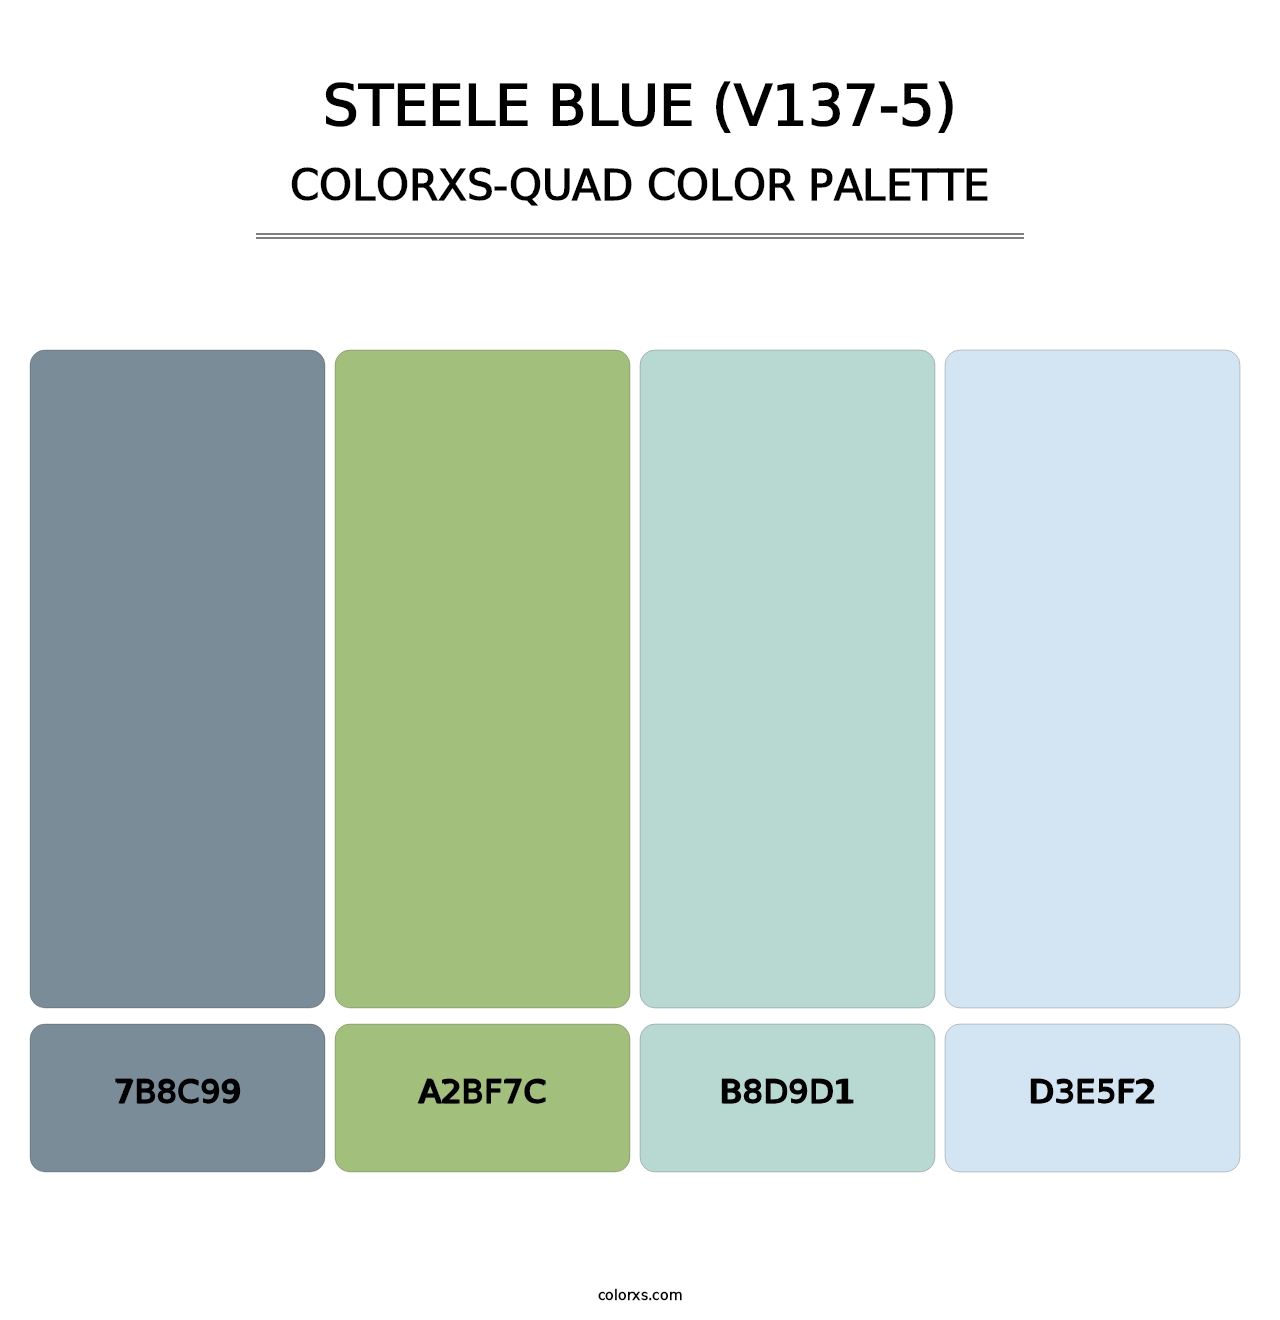 Steele Blue (V137-5) - Colorxs Quad Palette